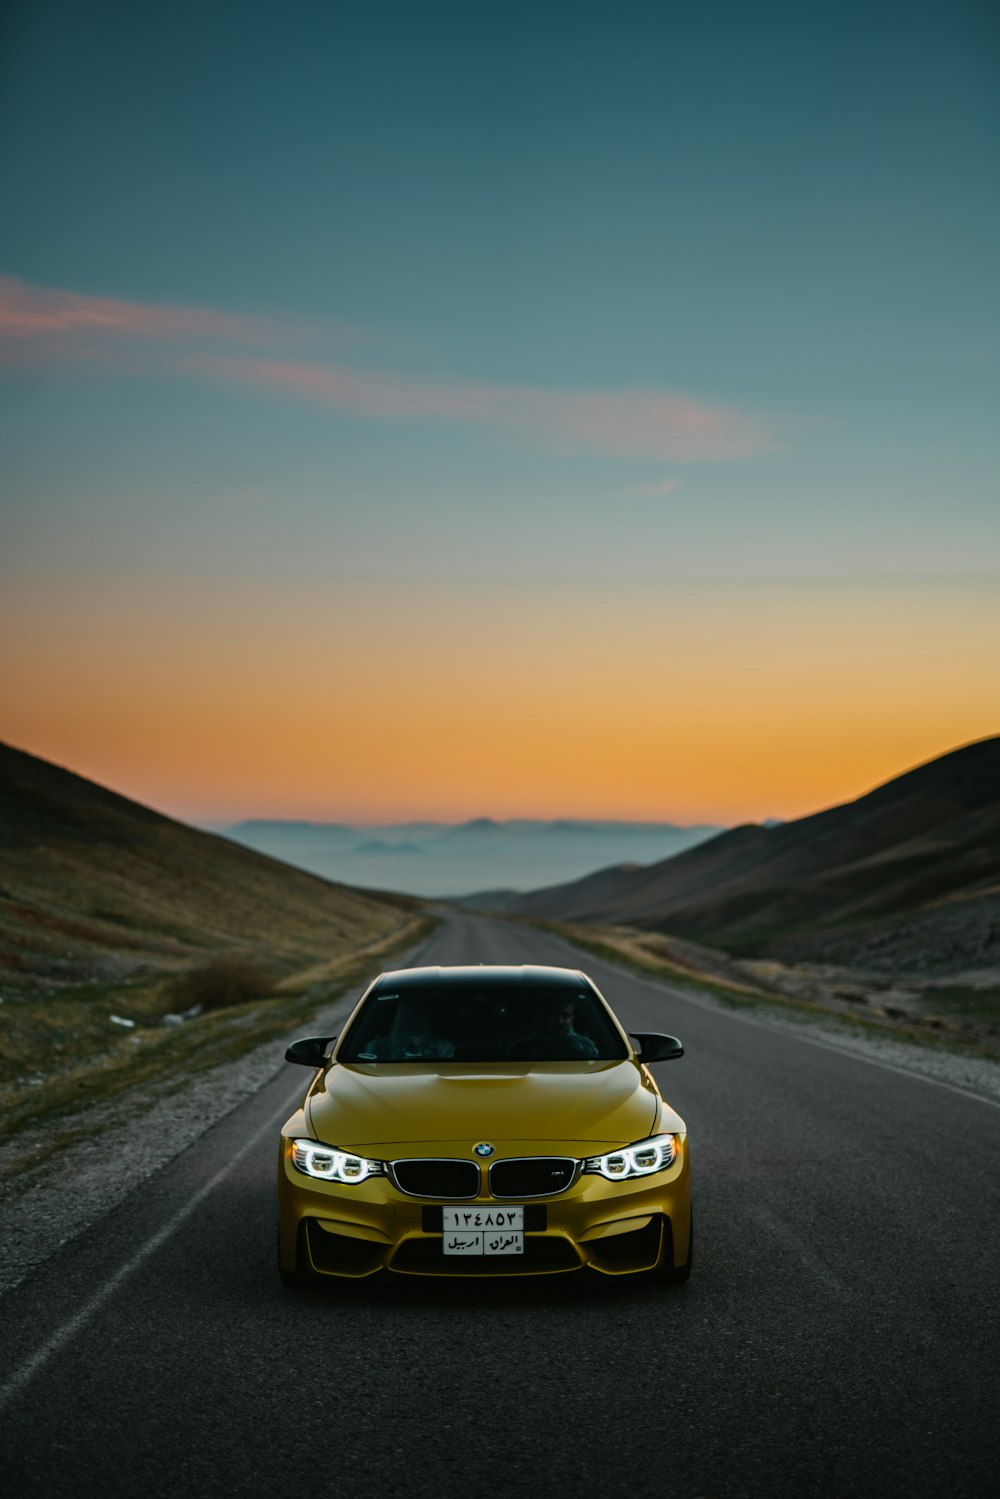 Coche BMW amarillo en carretera